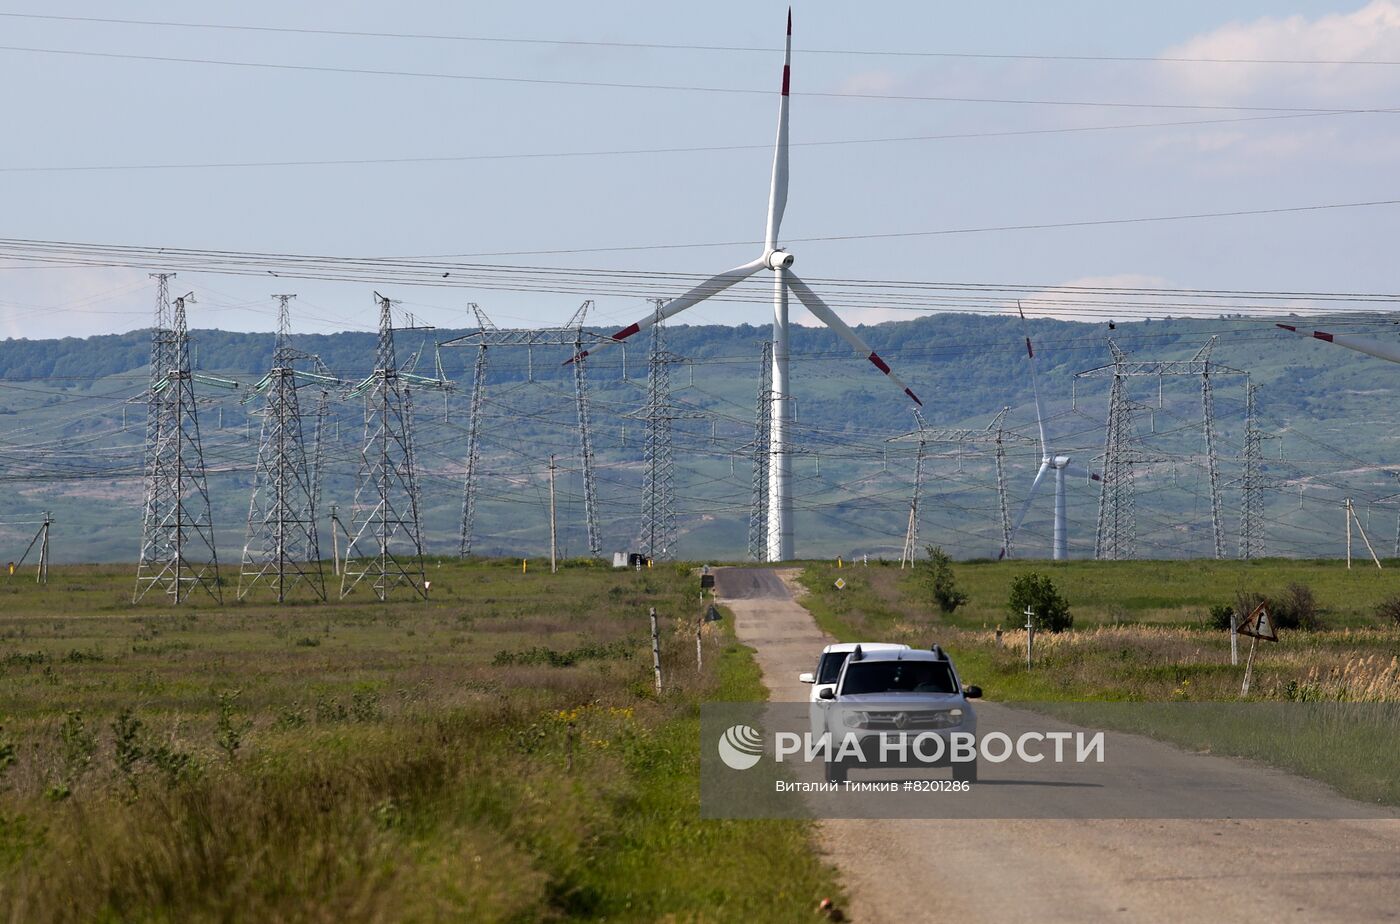 Кочубеевская ветряная электростанция